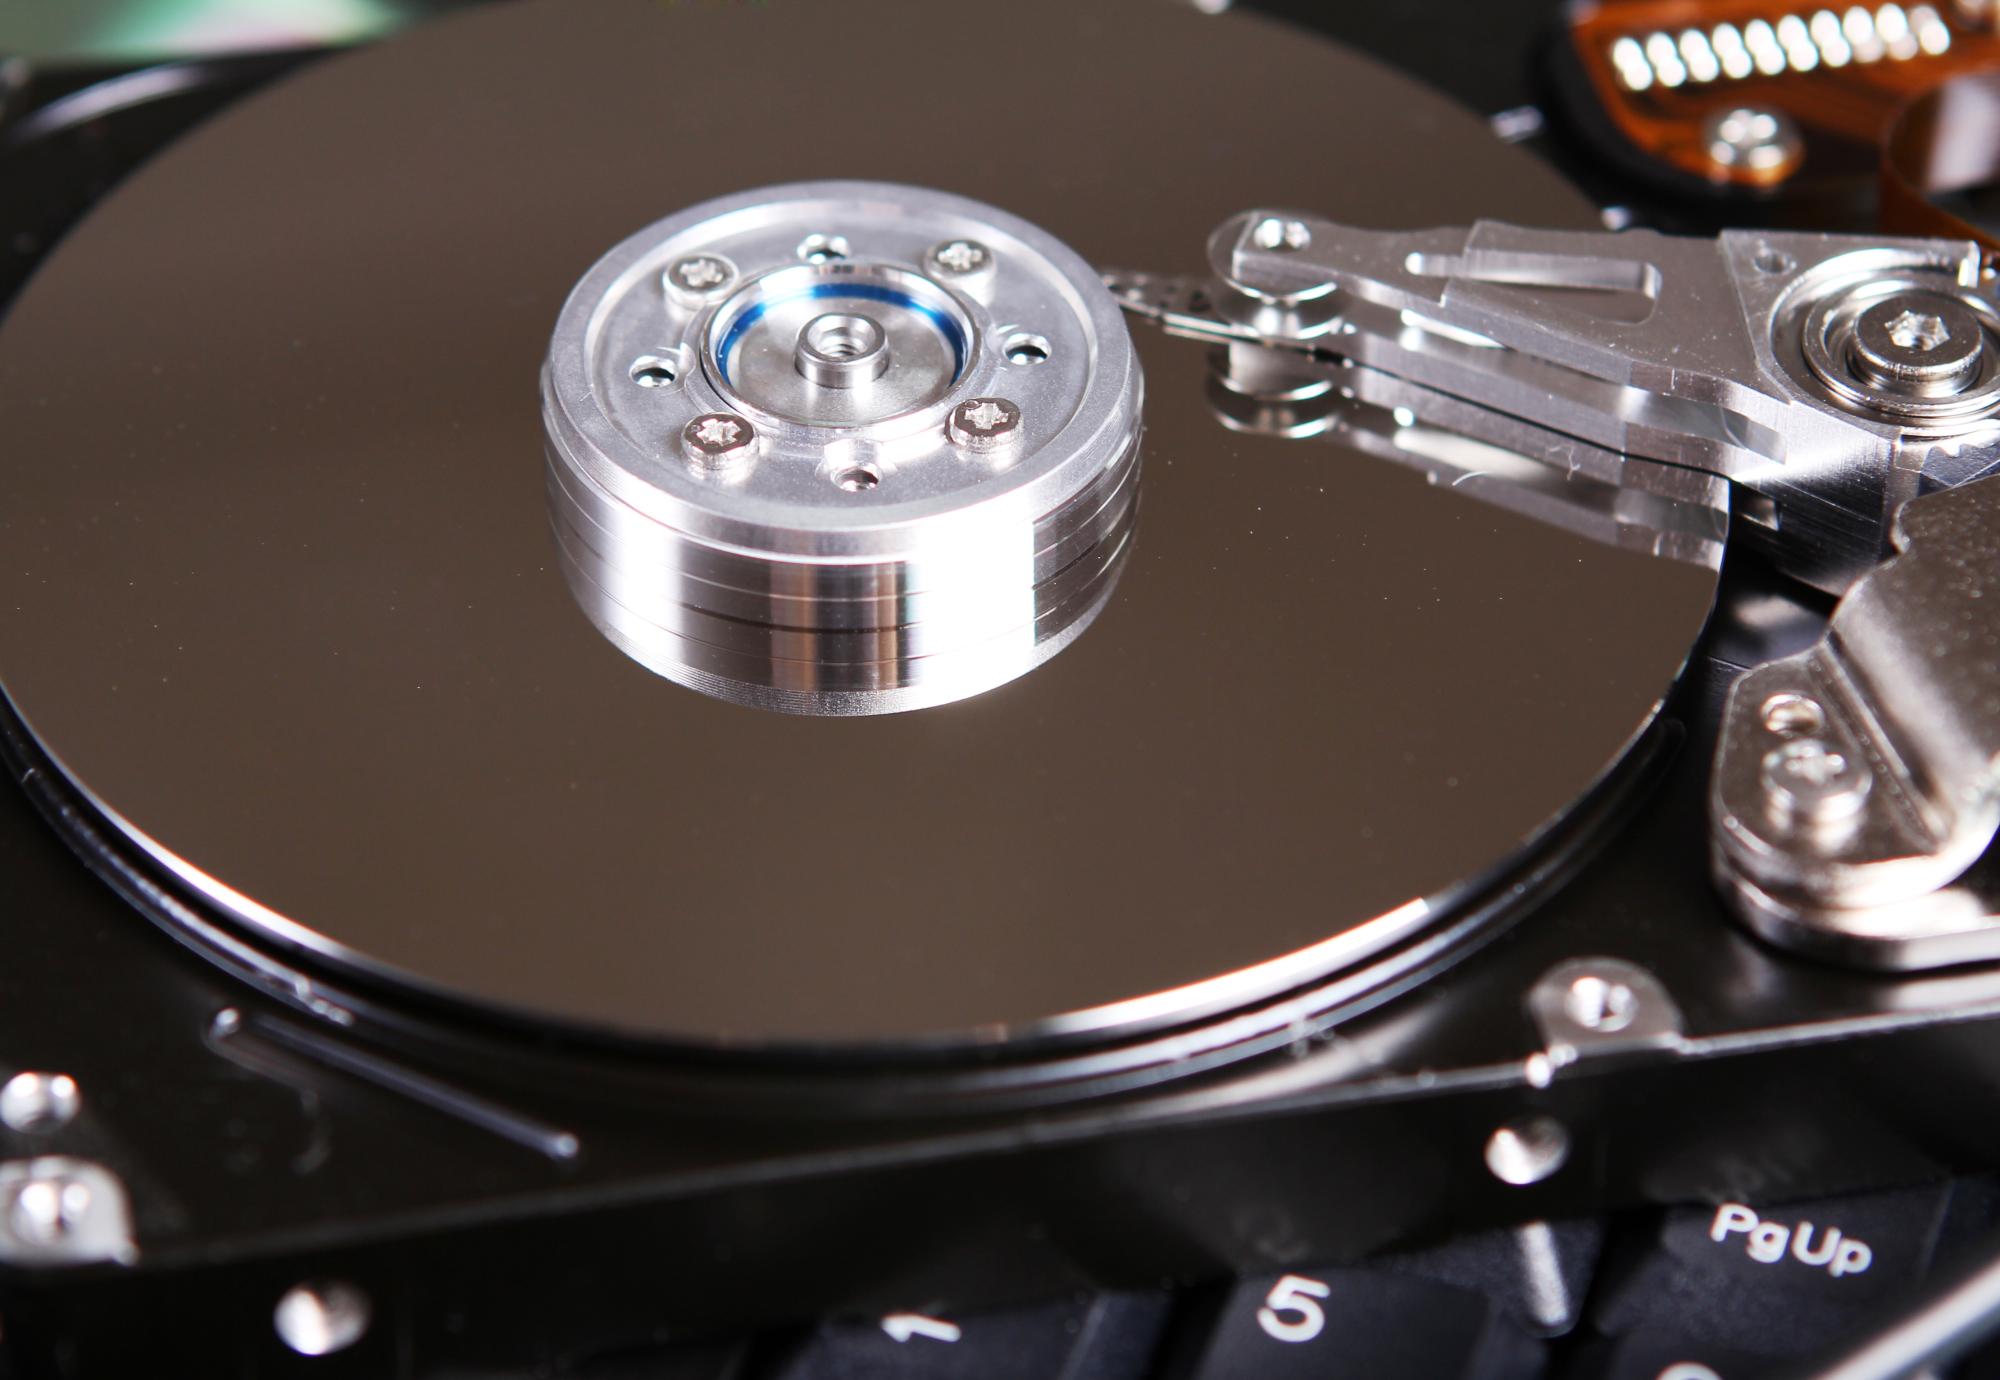 harici HDD diskler nasıl çalışır?